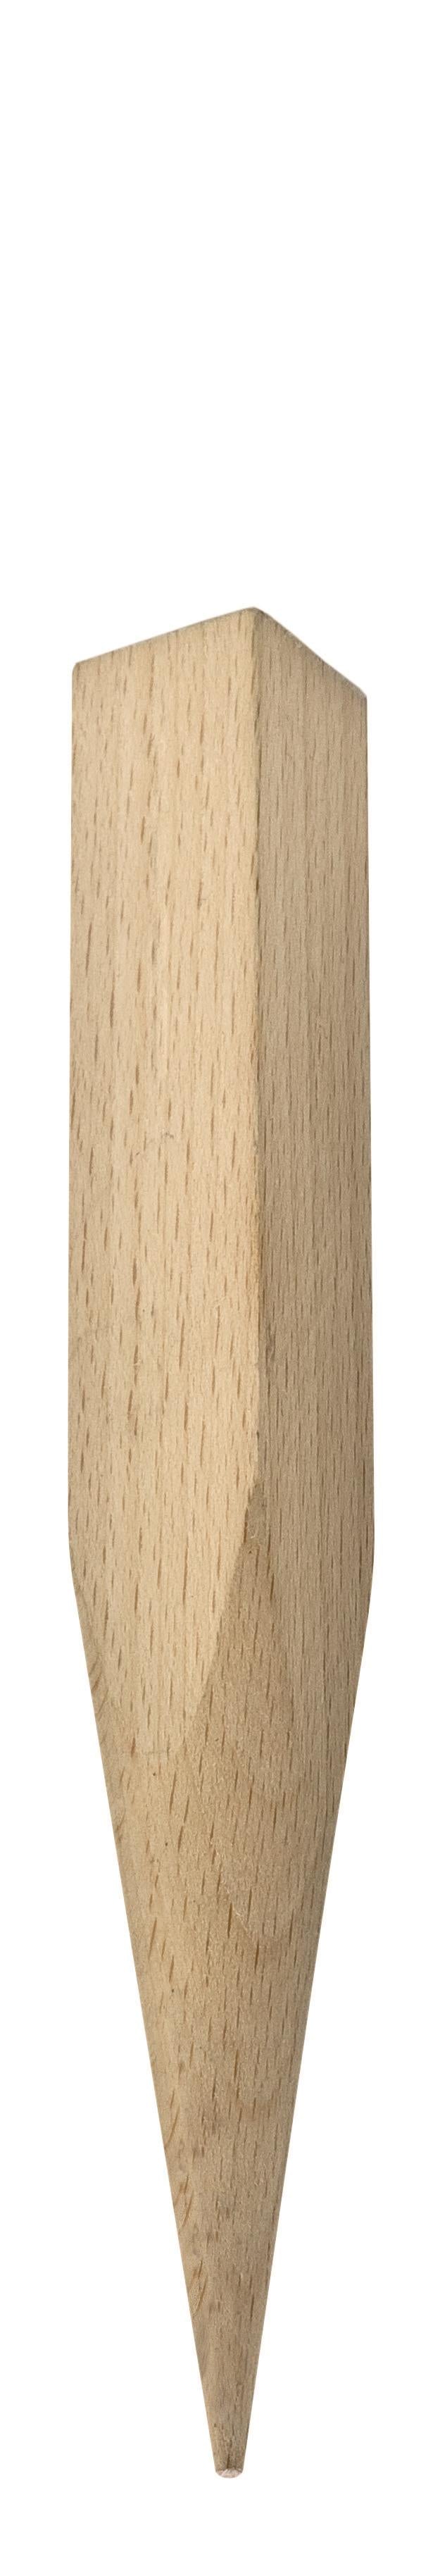 3x Holzspieße für Fackeln 3 Stück 160/18,5mm